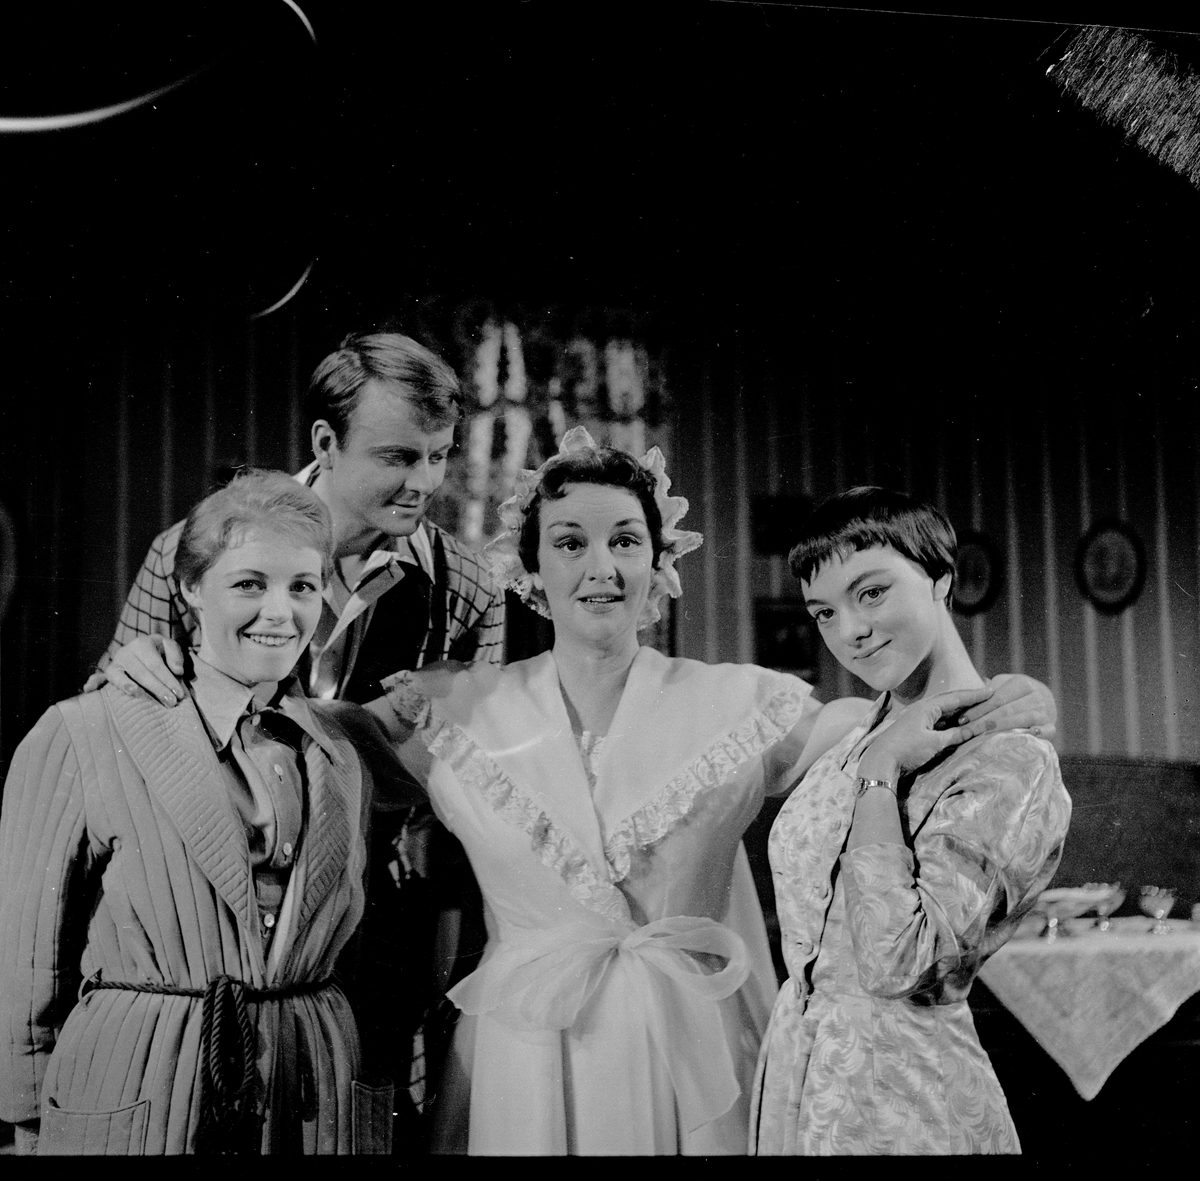 Fra teaterforstillingen "Vår i luften" på Folketeatret. Fra venstre Kari Simonsen, Per Lillo Stenberg, Else Heiberg og Marit Bolling. Fotograftert 12. mai 1958.